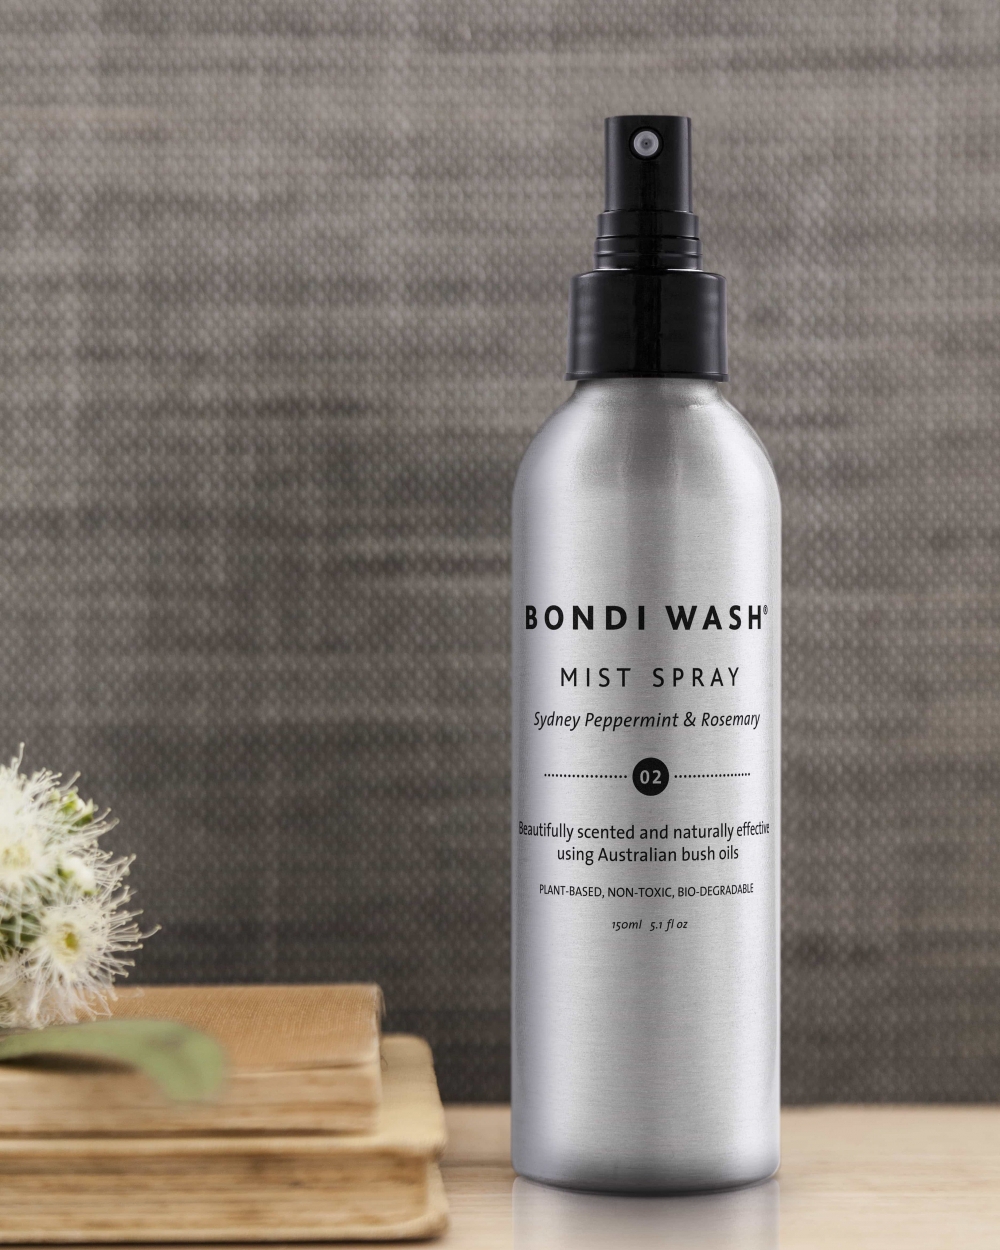 Mist spray Bondi Wash - fragonia & sandalwood